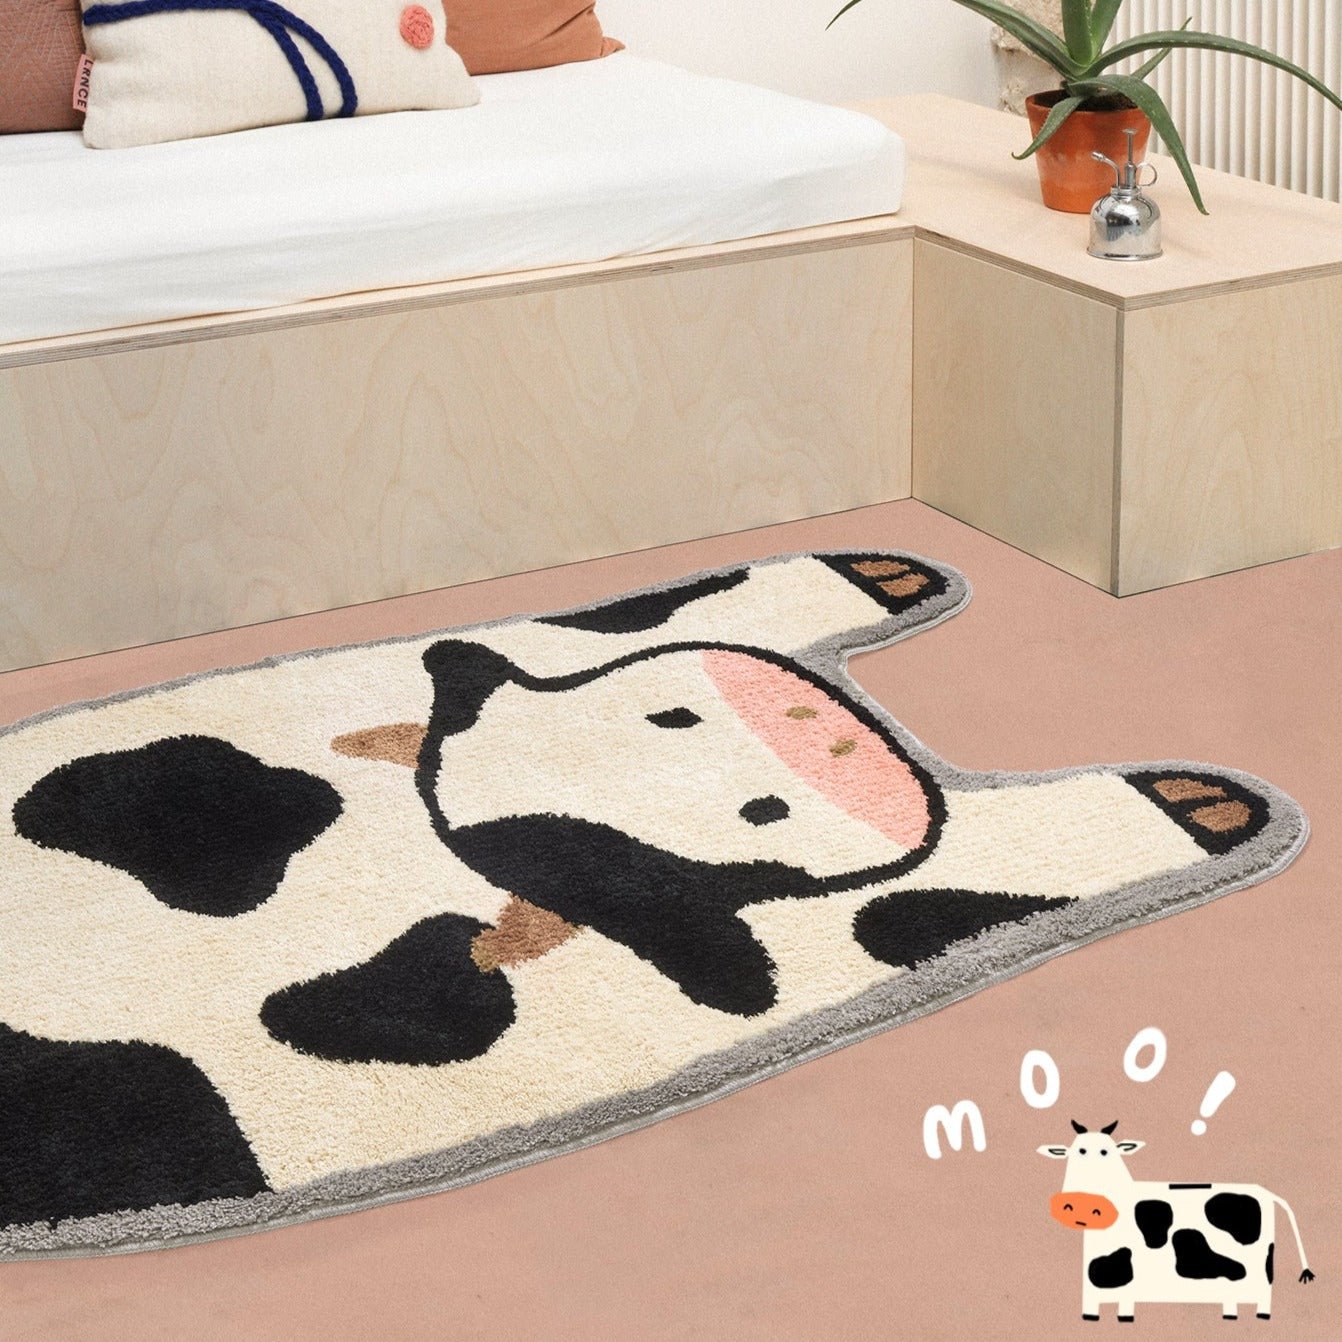 Cow Moo Moo Rug - patchandbagel